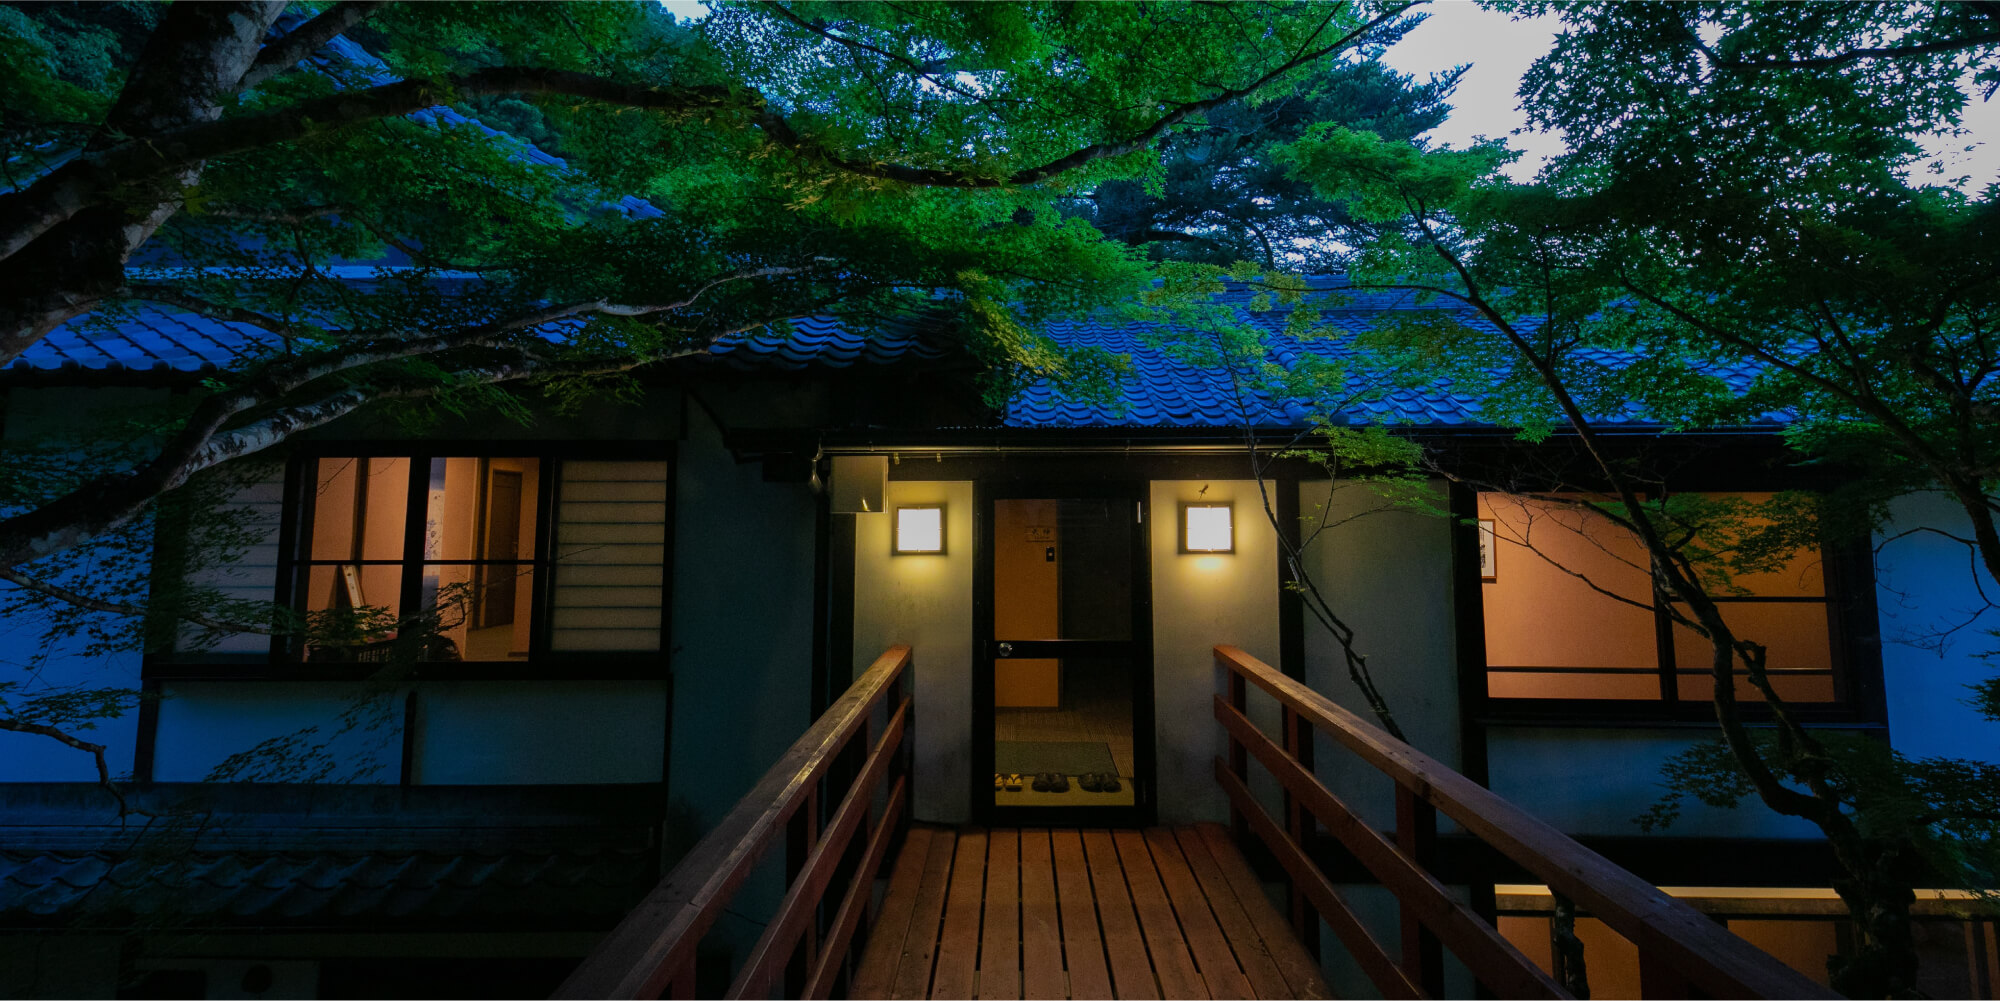 播磨姫路の奥座敷、自然に囲まれ癒しのひとときを